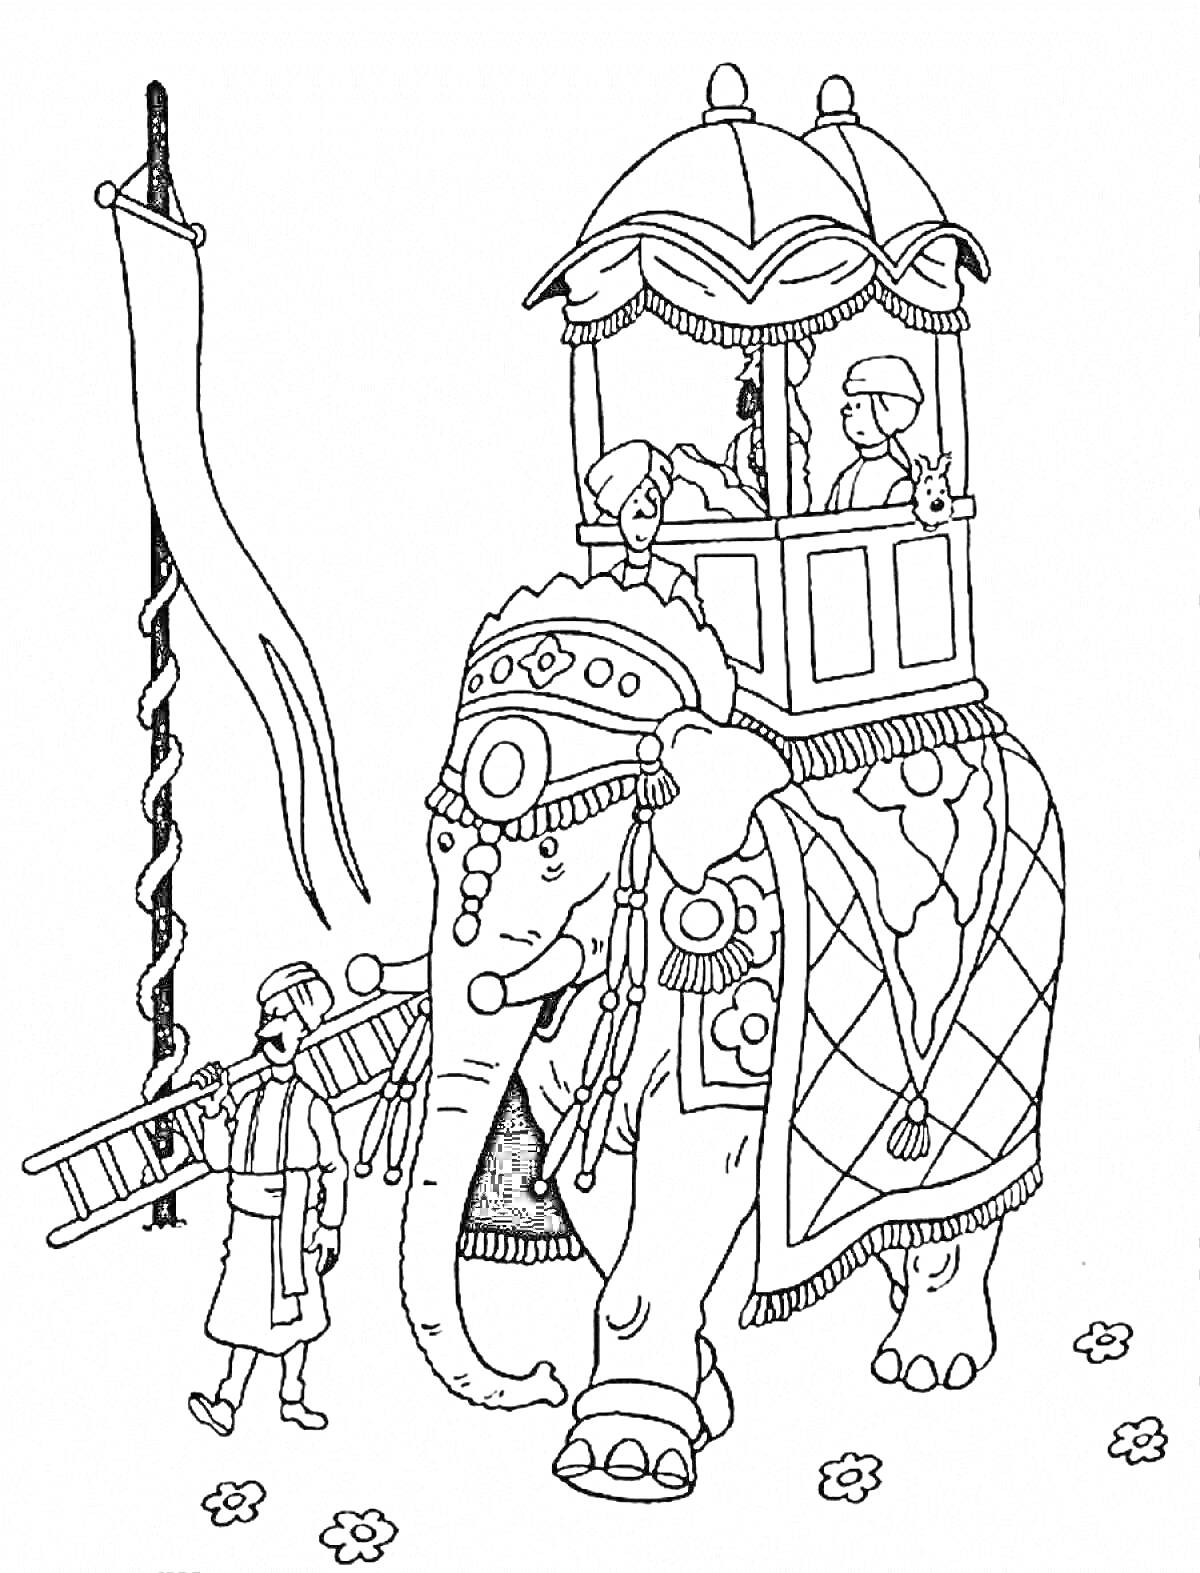 Индийский слон с паланкином, люди на спине слона, махаут с лестницей возле слона, флаг и цветы на земле